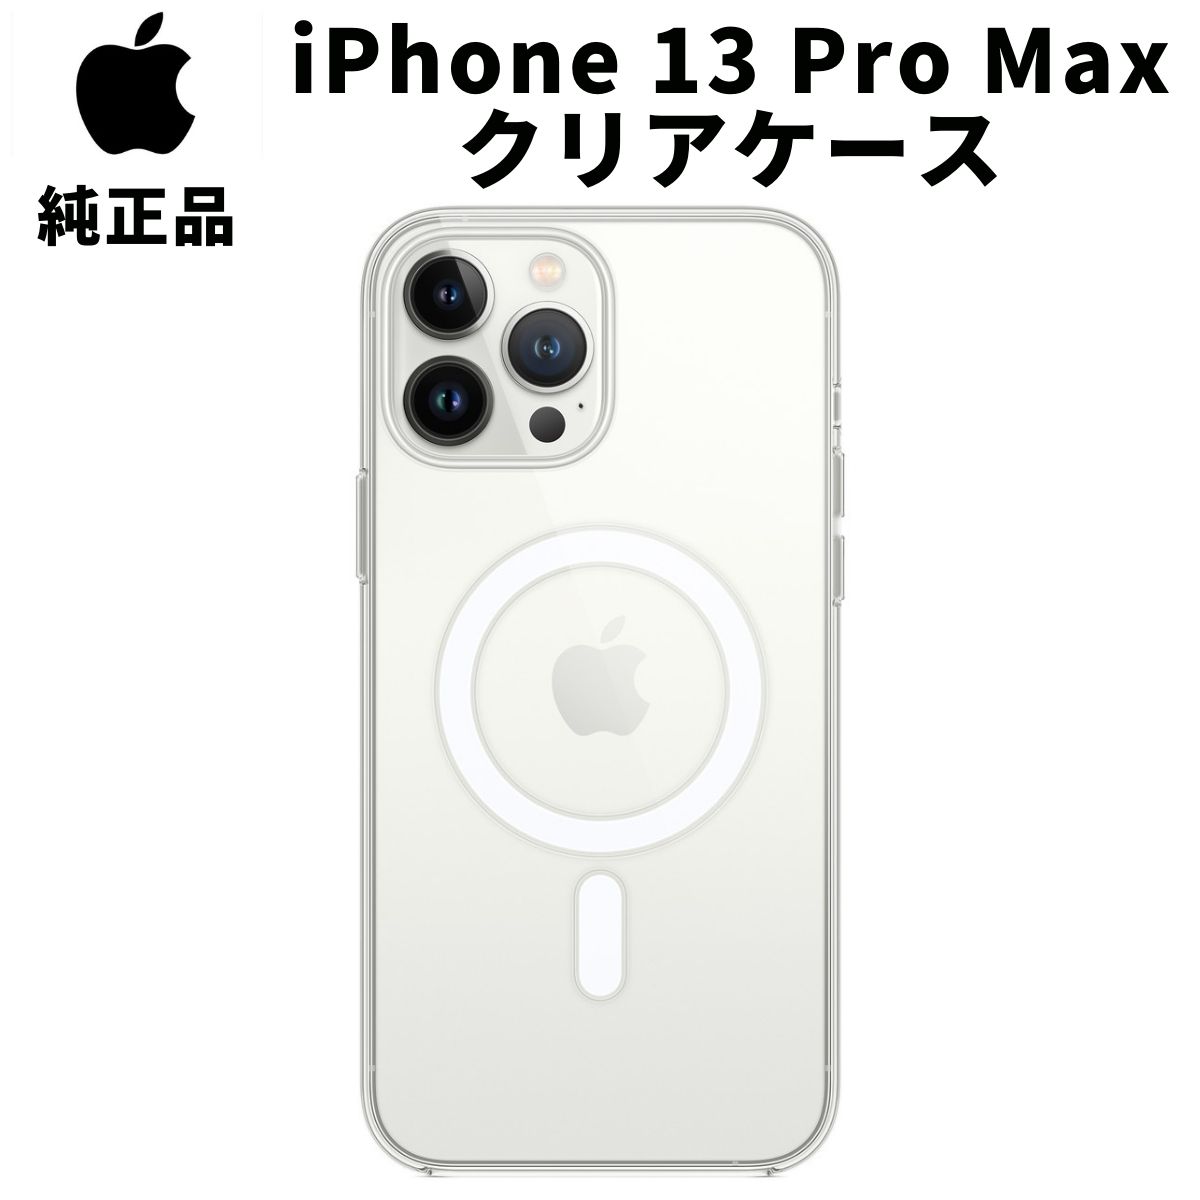 【在庫処分特価】Apple 純正 iPhone13 Pro Max クリアケース MagSafe対応 13プロマックス マグセーフ アップル 並行輸入品 apple純正ケース アイホン アイフォン アイフォーン スマホケース カバー magsafe iphoneケース アクセサリー